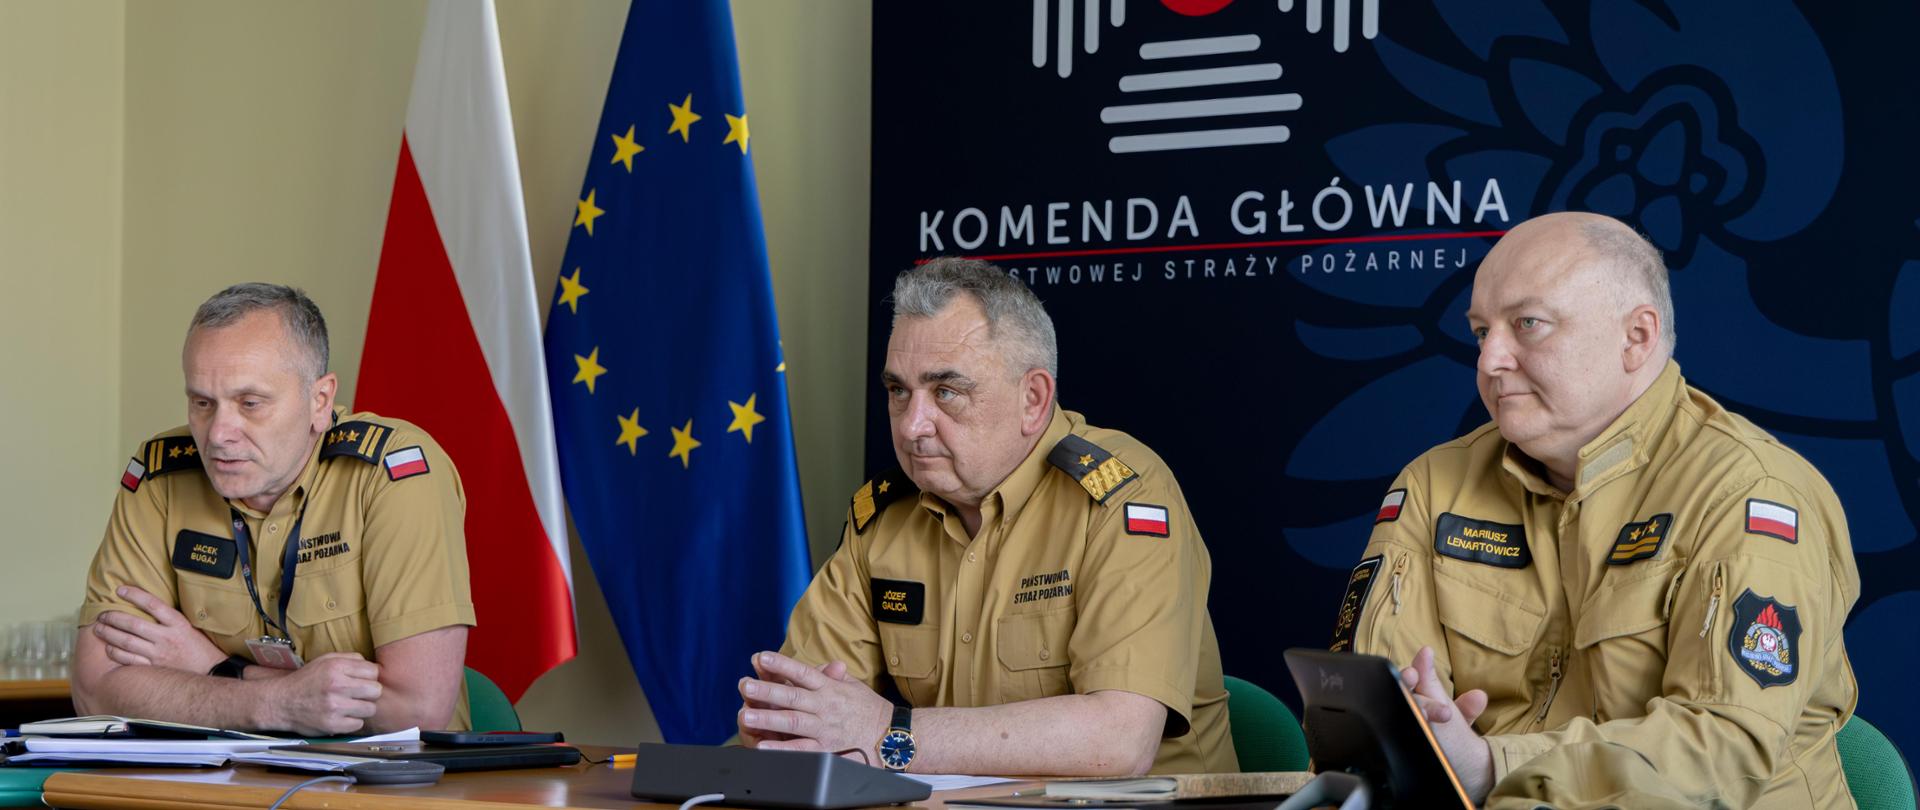 Trzech funkcjonariuszy PSP siedzi przy stole, w tle flaga polski i unii europejskiej.